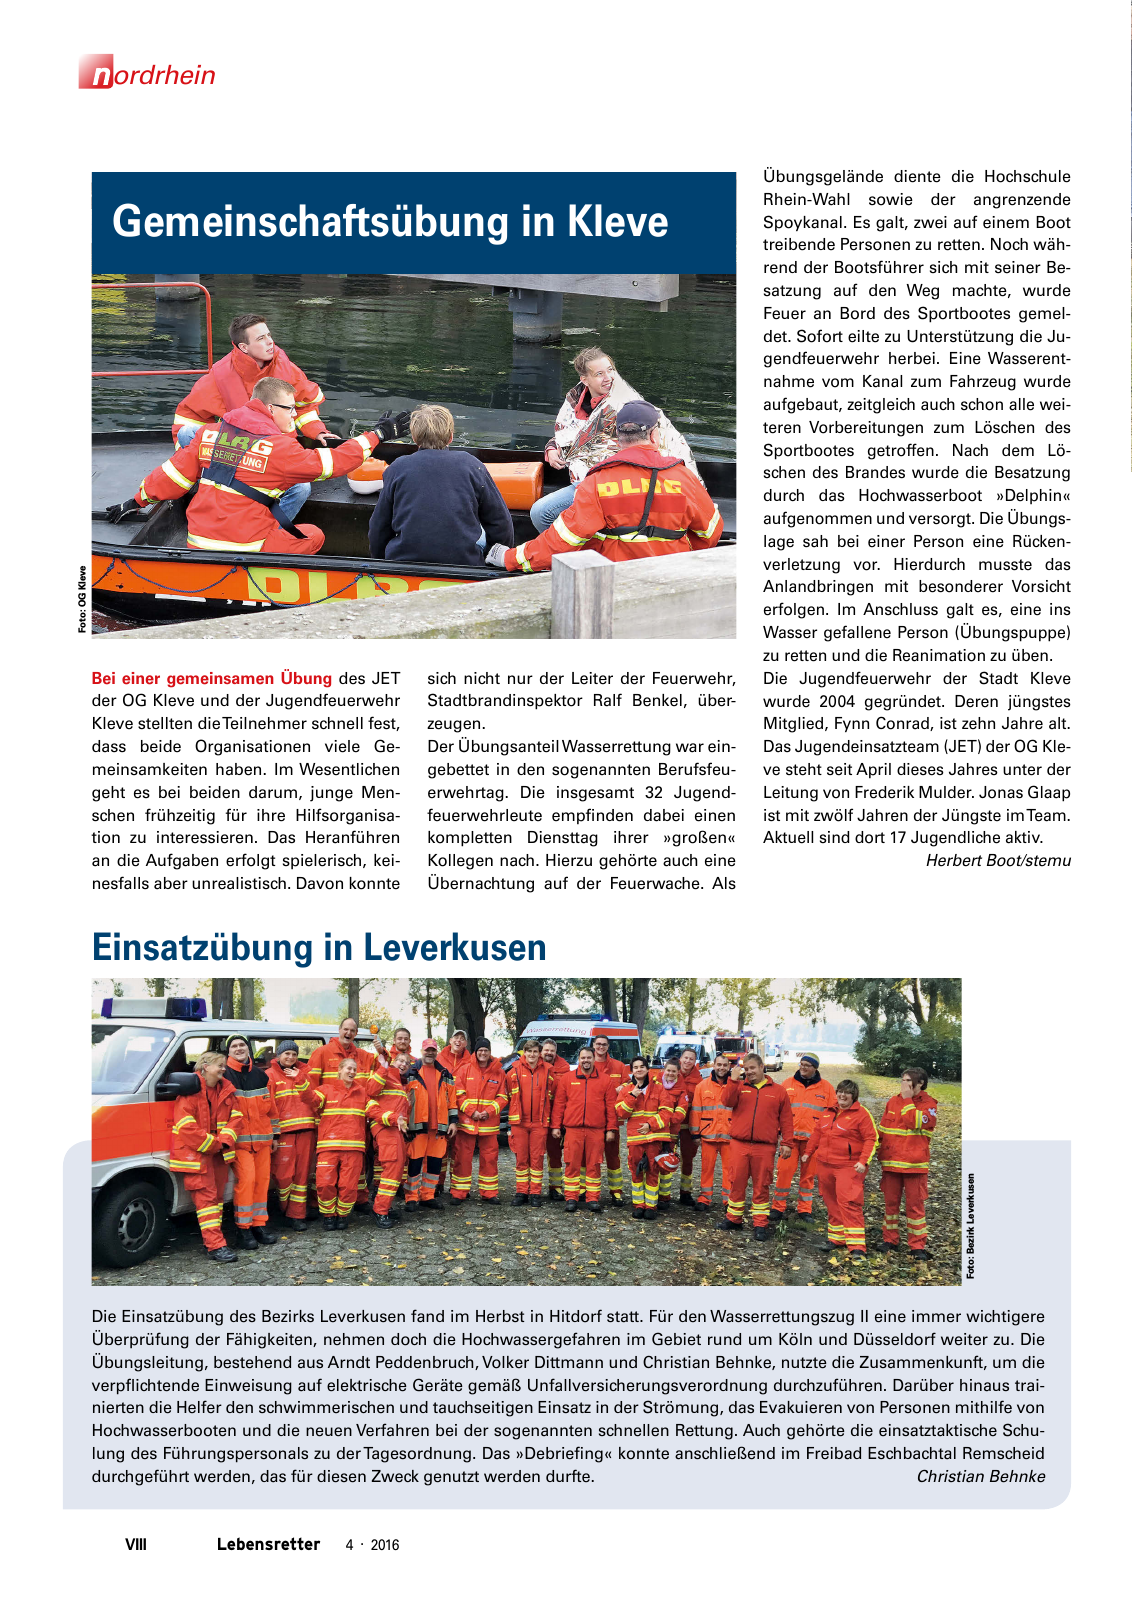 Vorschau Lebensretter 4/2016 - Regionalausgabe Nordrhein Seite 10